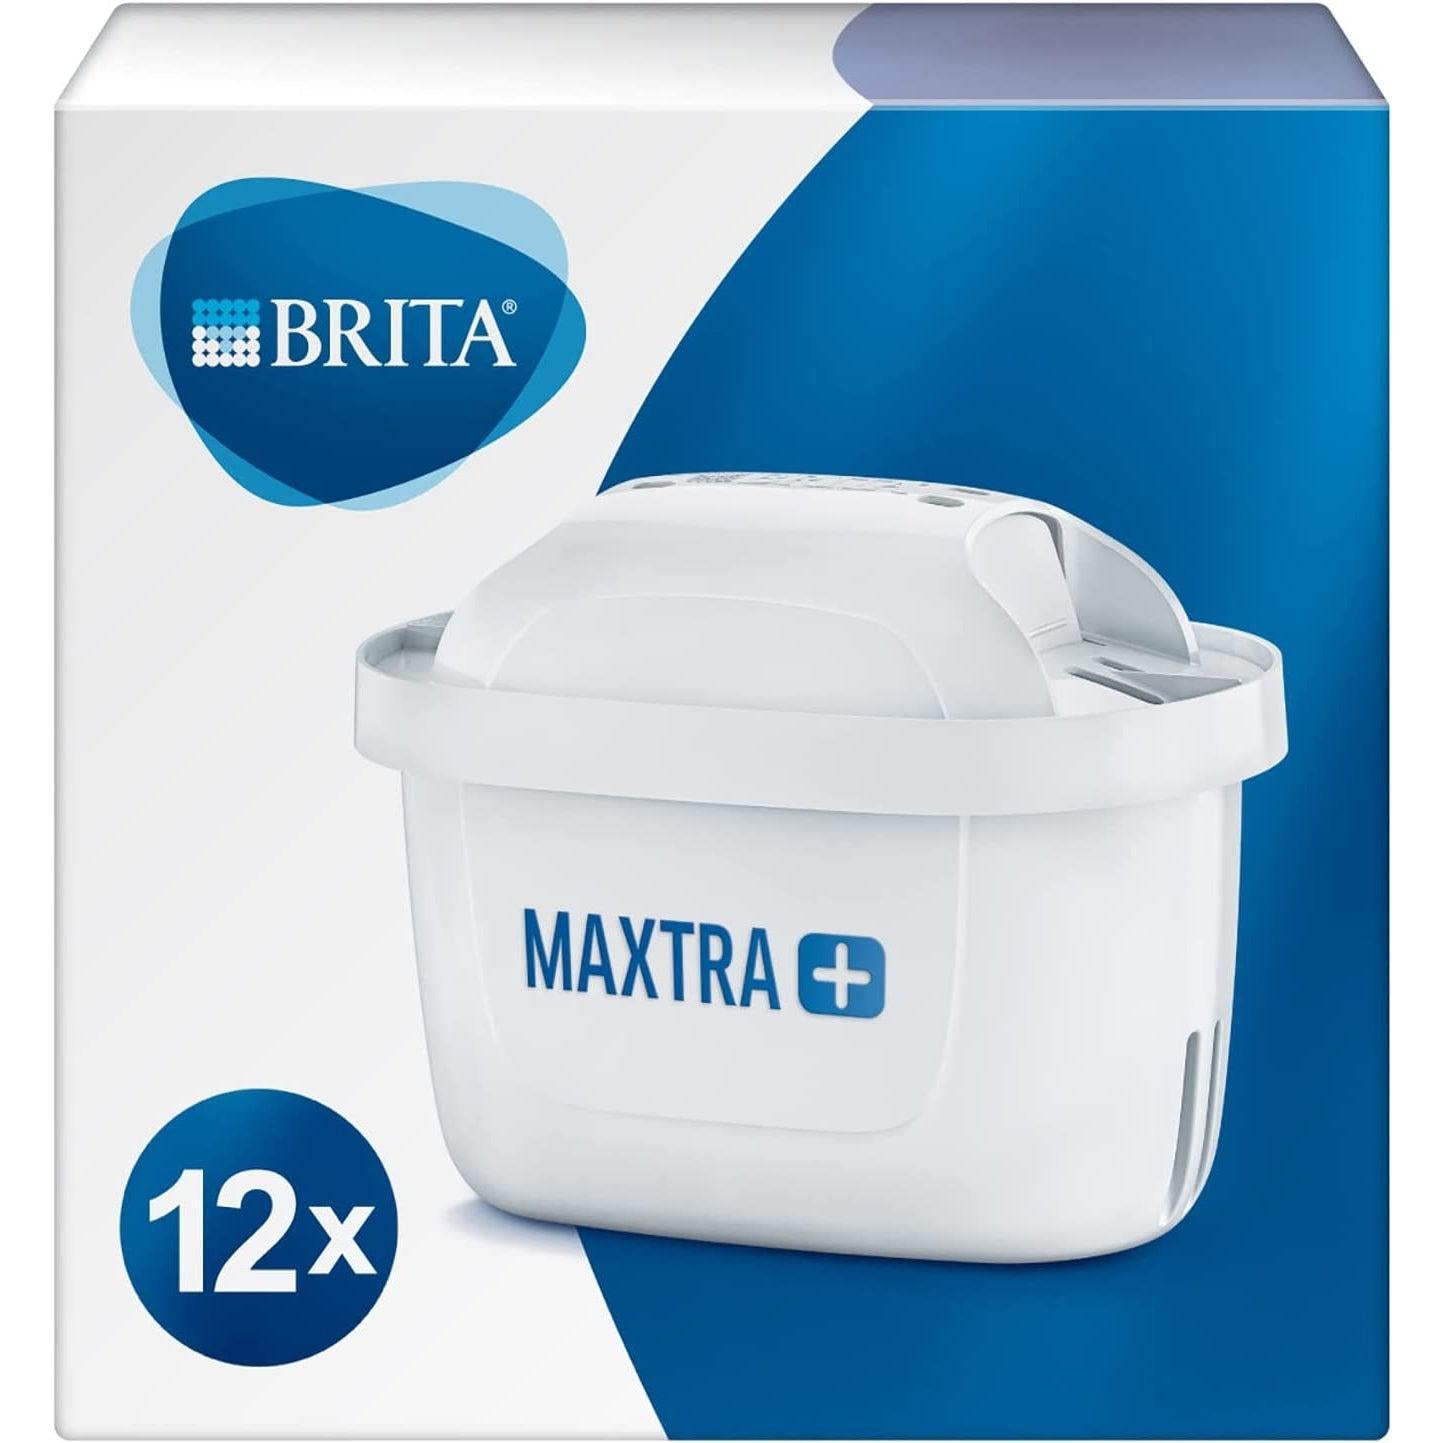 BRITA MAXTRA PRO Limescale Expert - Cartucho de filtro de agua (12  unidades) – Recambio original BRITA para la máxima protección de  electrodomésticos, reduciendo impurezas, cloro y metales : Todo lo demás 